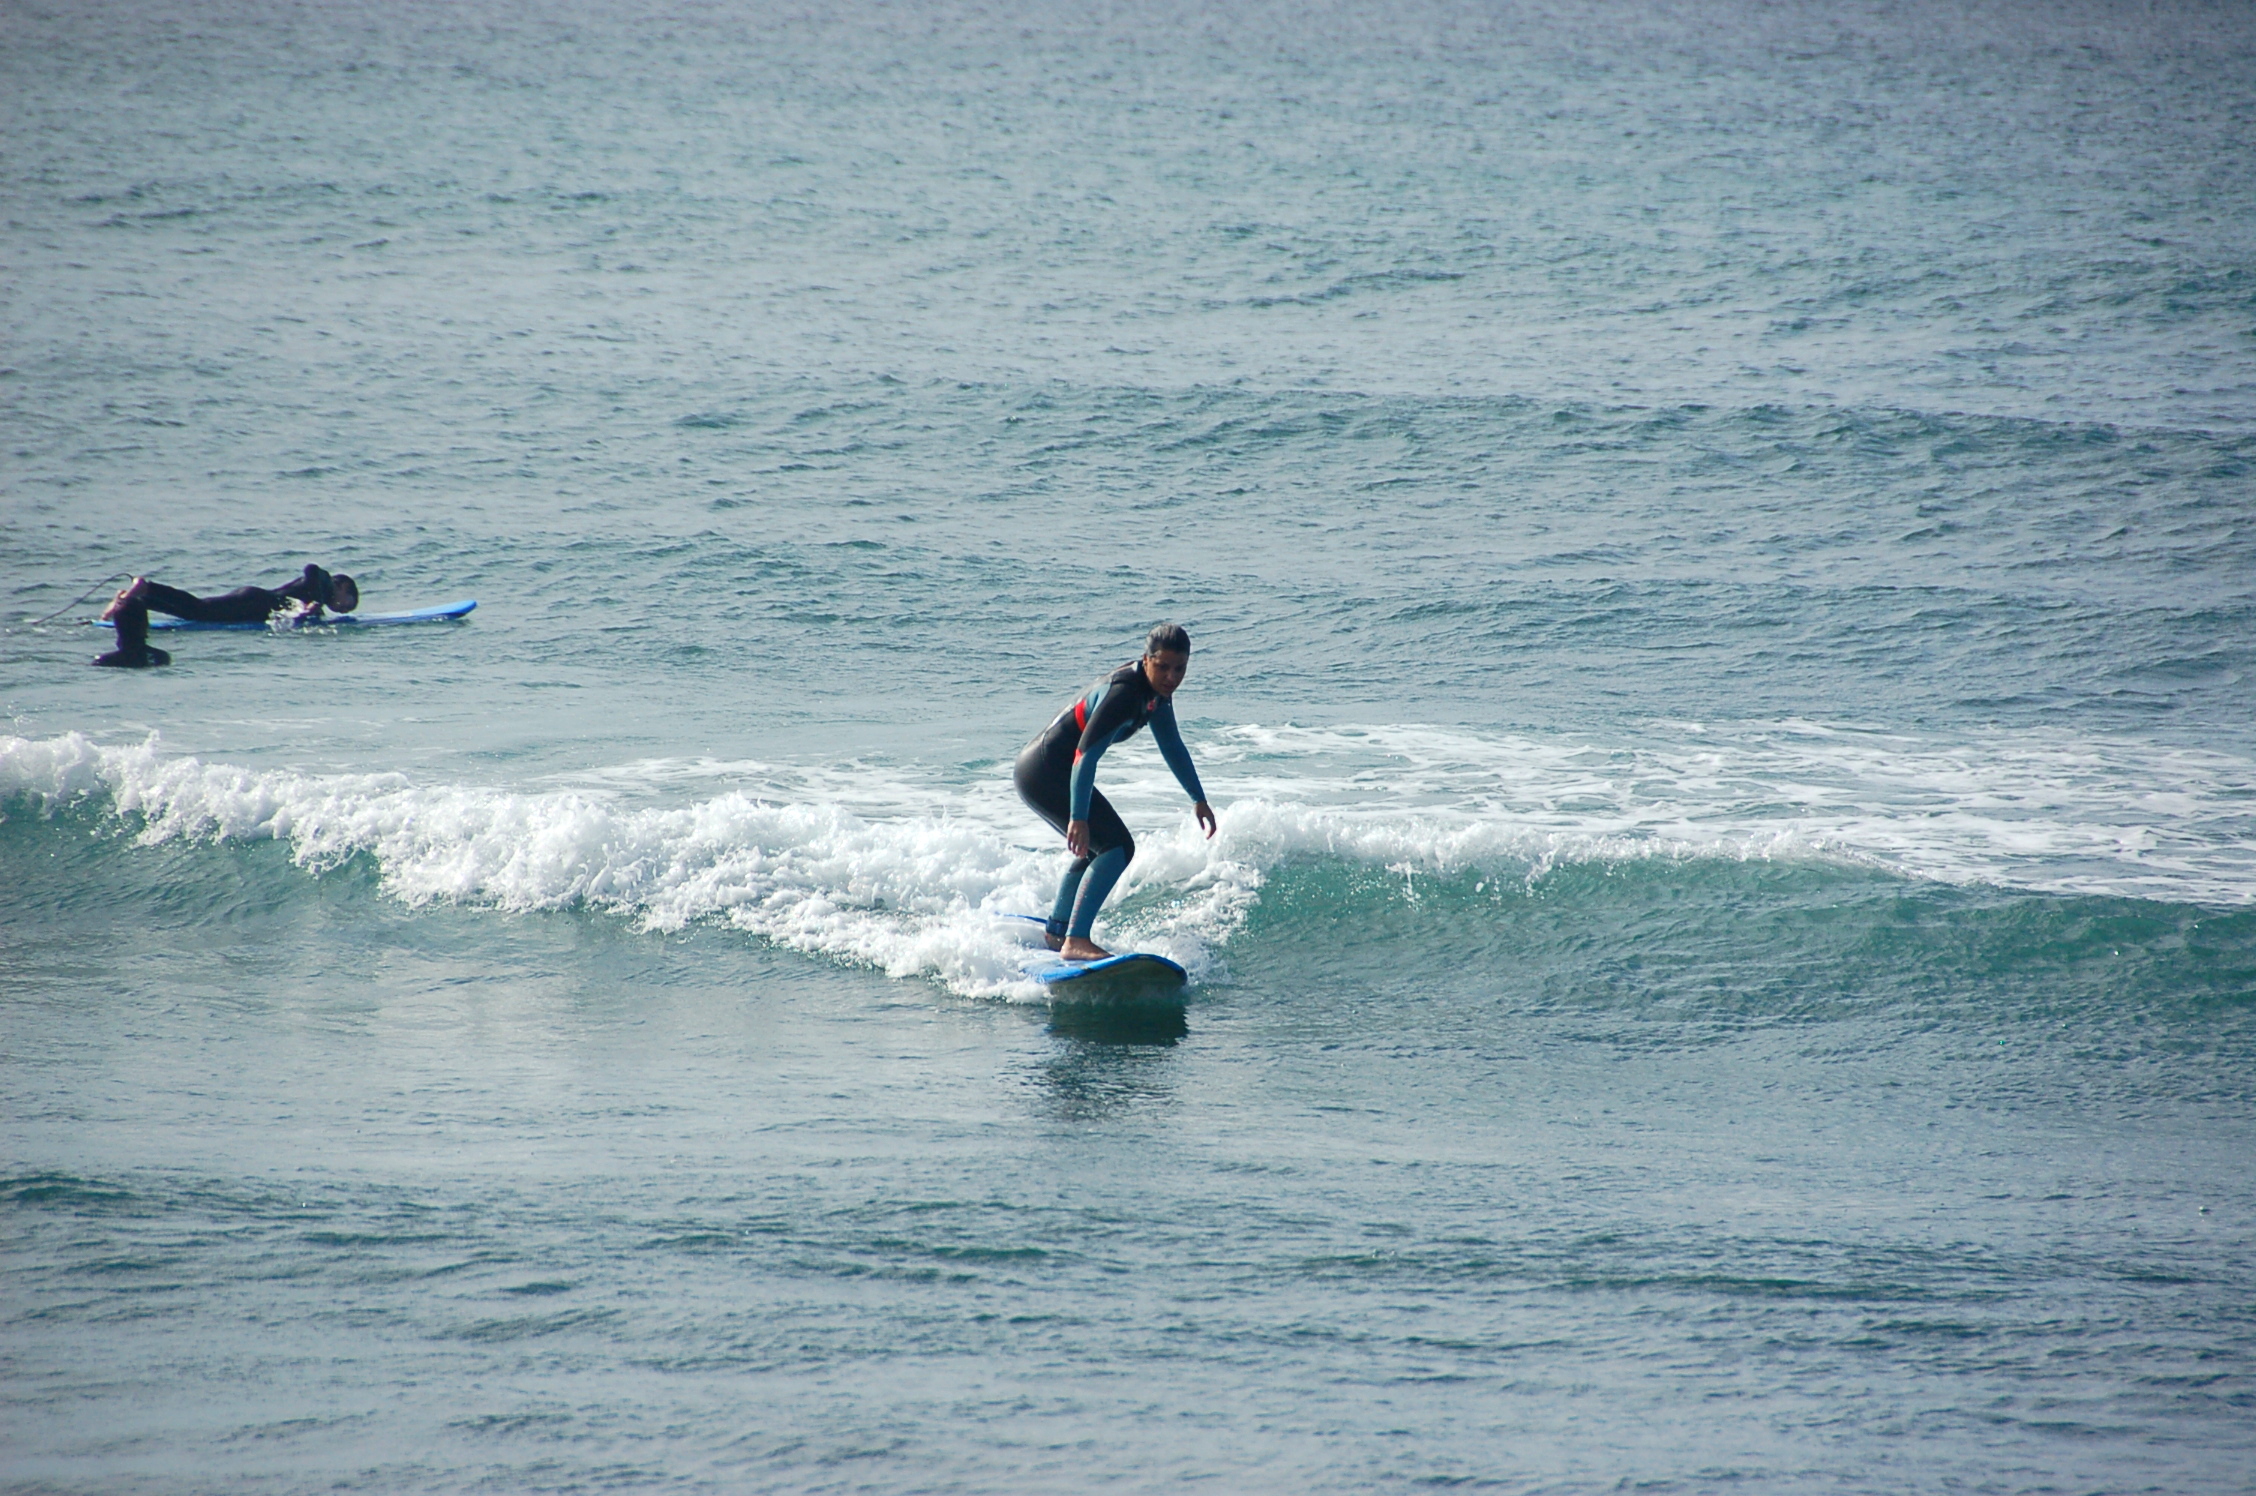 Julho de 2012 – SurfingEurope: Reportagem sobre a Azores Surf School